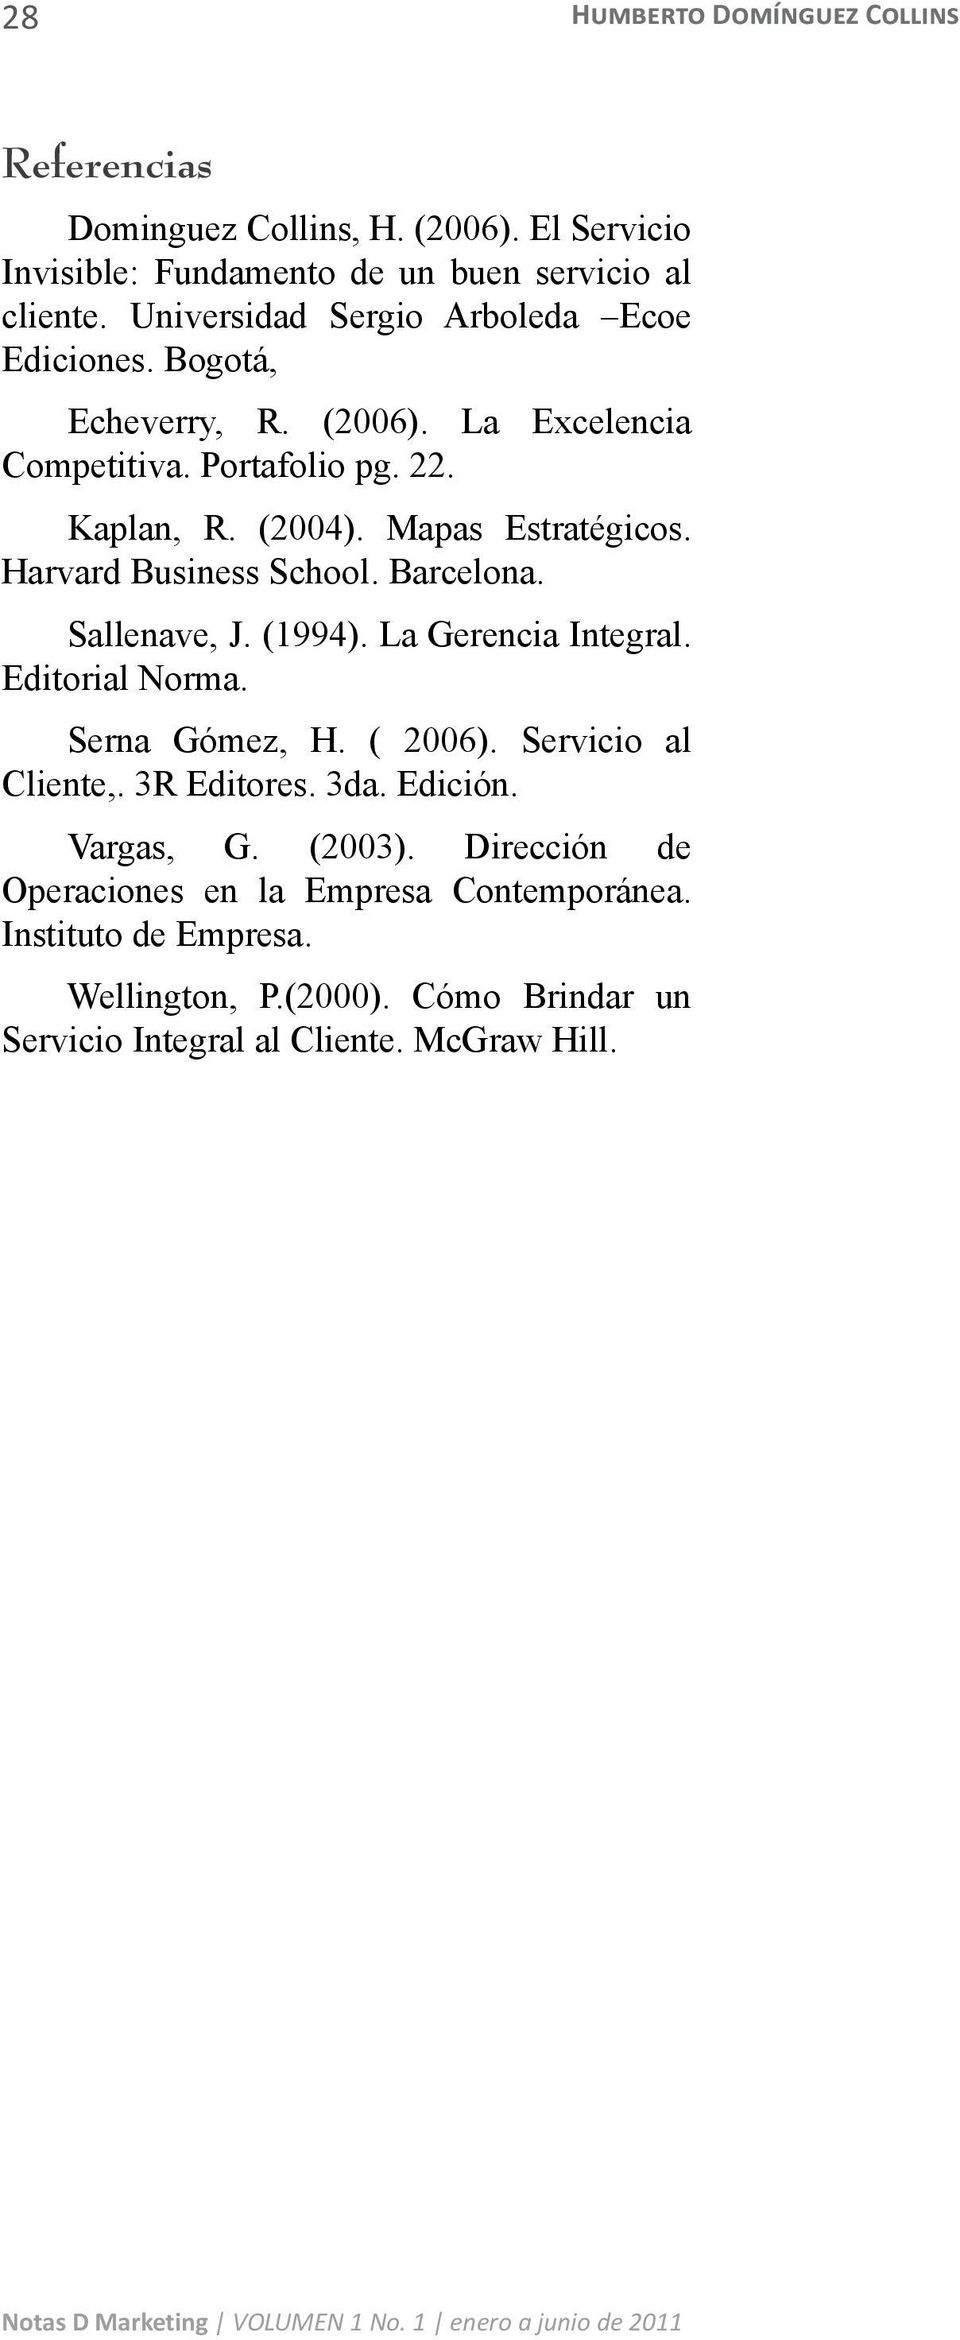 Harvard Business School. Barcelona. Sallenave, J. (1994). La Gerencia Integral. Editorial Norma. Serna Gómez, H. ( 2006). Servicio al Cliente,. 3R Editores. 3da.